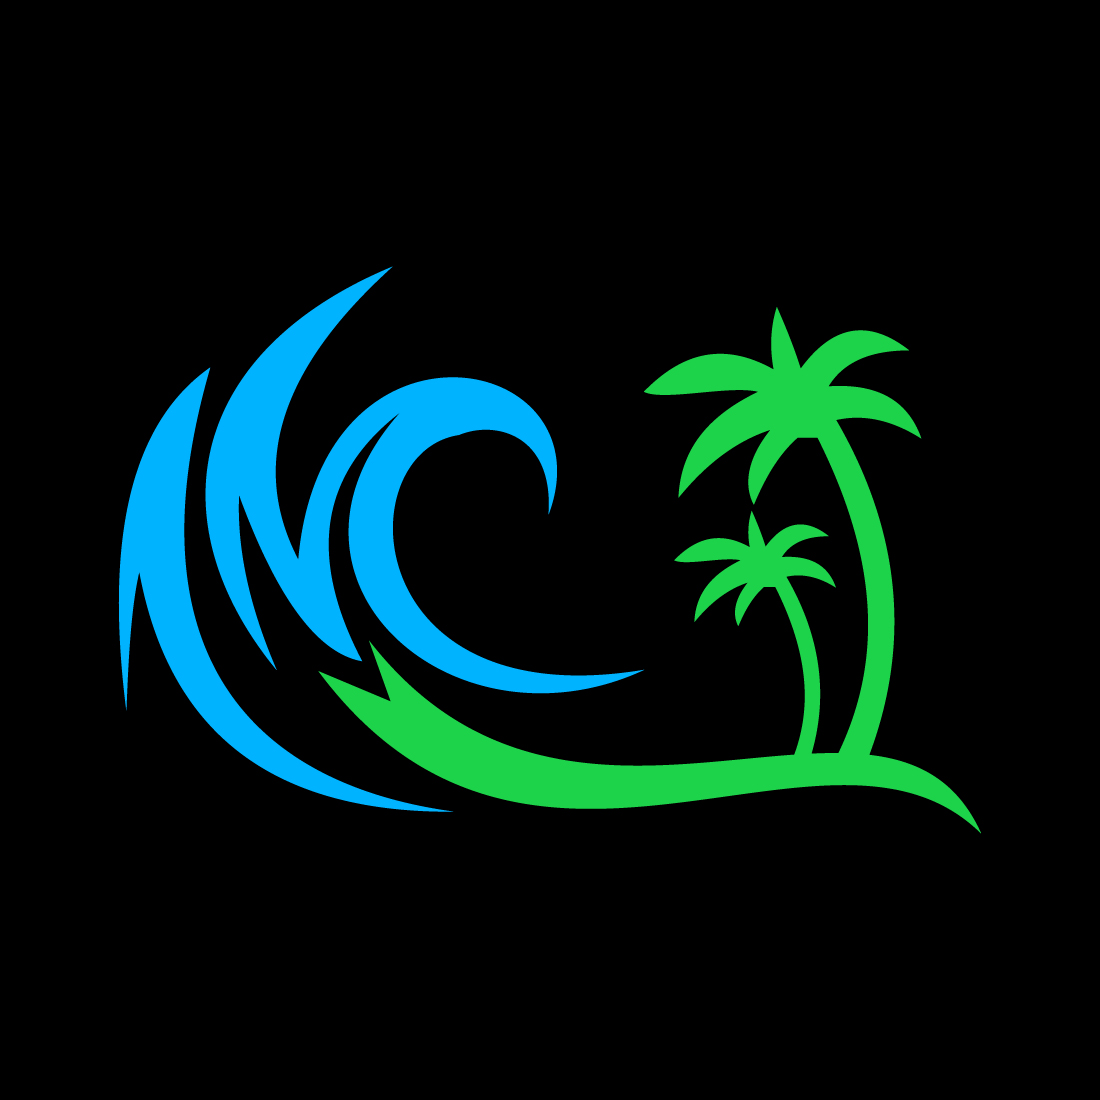 Creative Beach logo design, Vector design concept cover image.